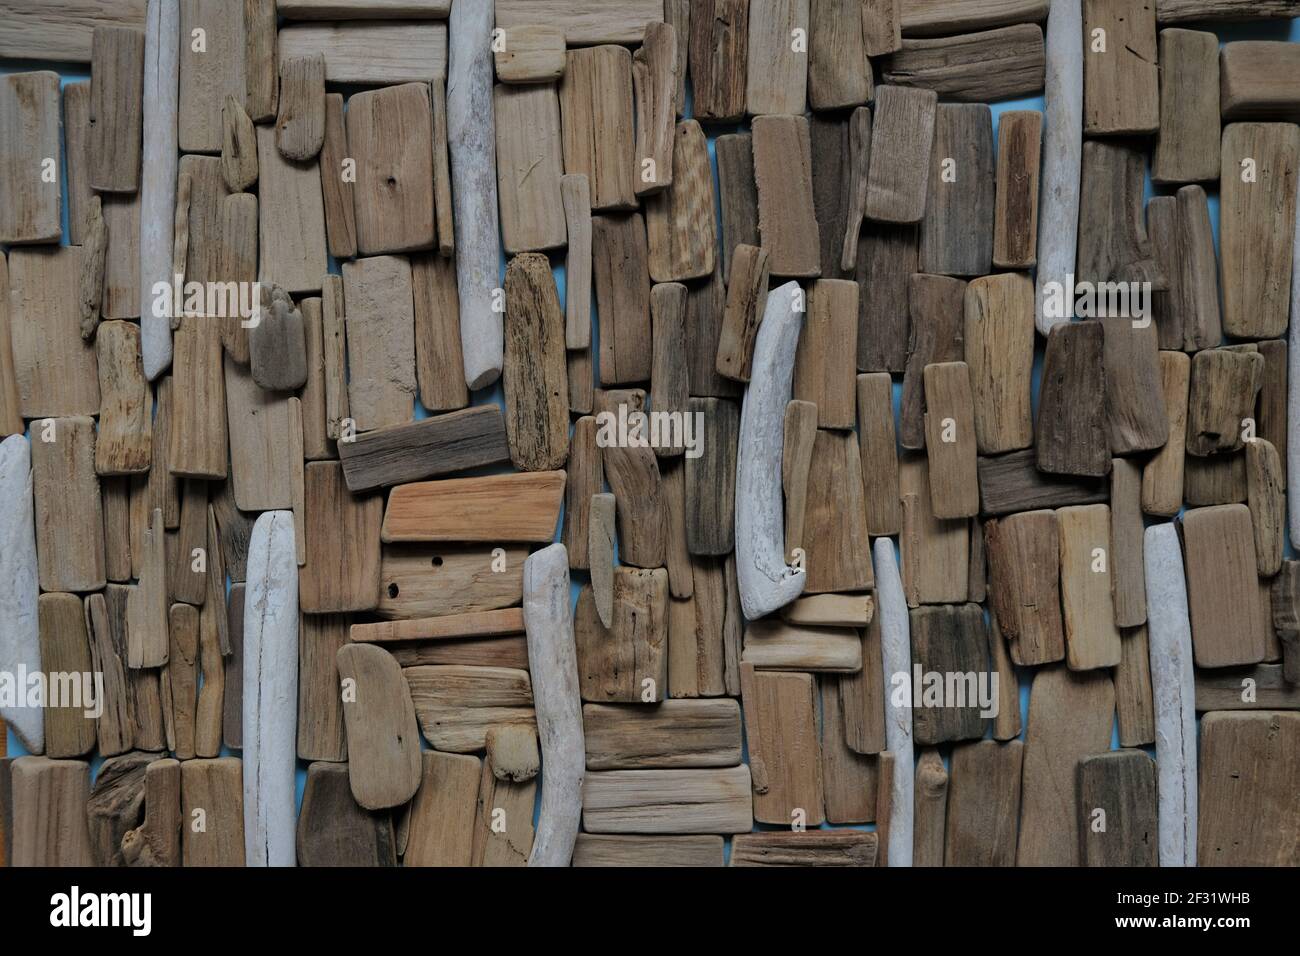 Driftwood wall.beach fond de bois flotté.ensemble de bois flotté gris et brun marins.panneau décoratif Dans un style marin.décor de bois flotté style nautique.plat Banque D'Images